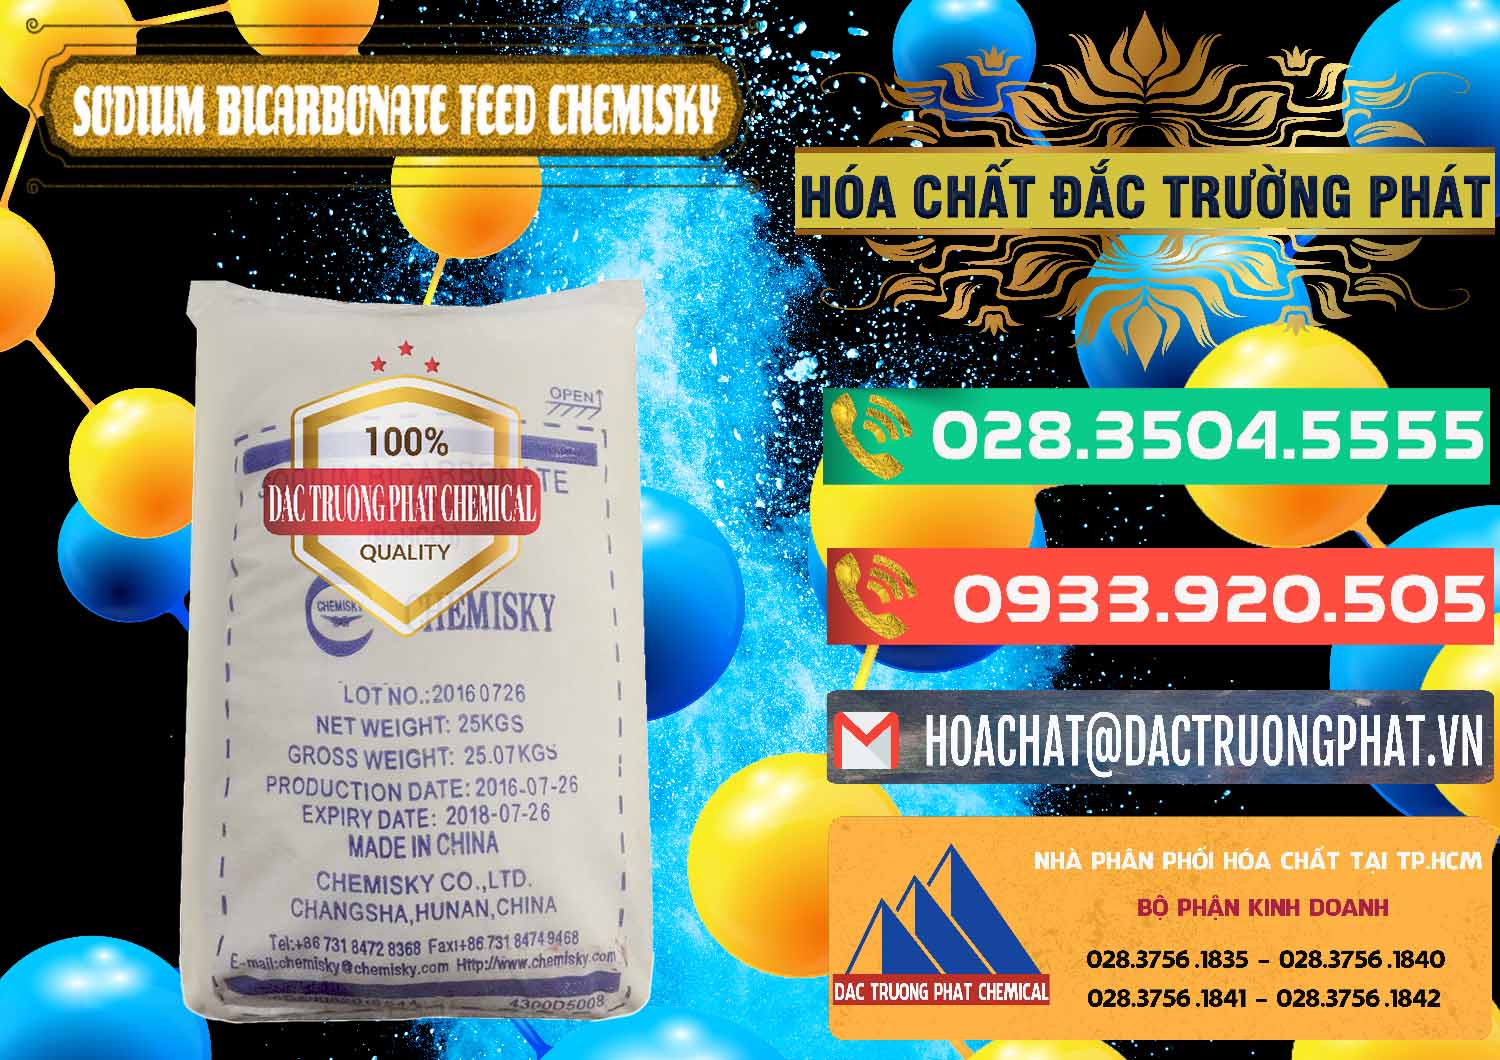 Đơn vị chuyên cung cấp _ bán Sodium Bicarbonate – Bicar NaHCO3 Feed Grade Chemisky Trung Quốc China - 0264 - Cty kinh doanh ( cung cấp ) hóa chất tại TP.HCM - congtyhoachat.com.vn